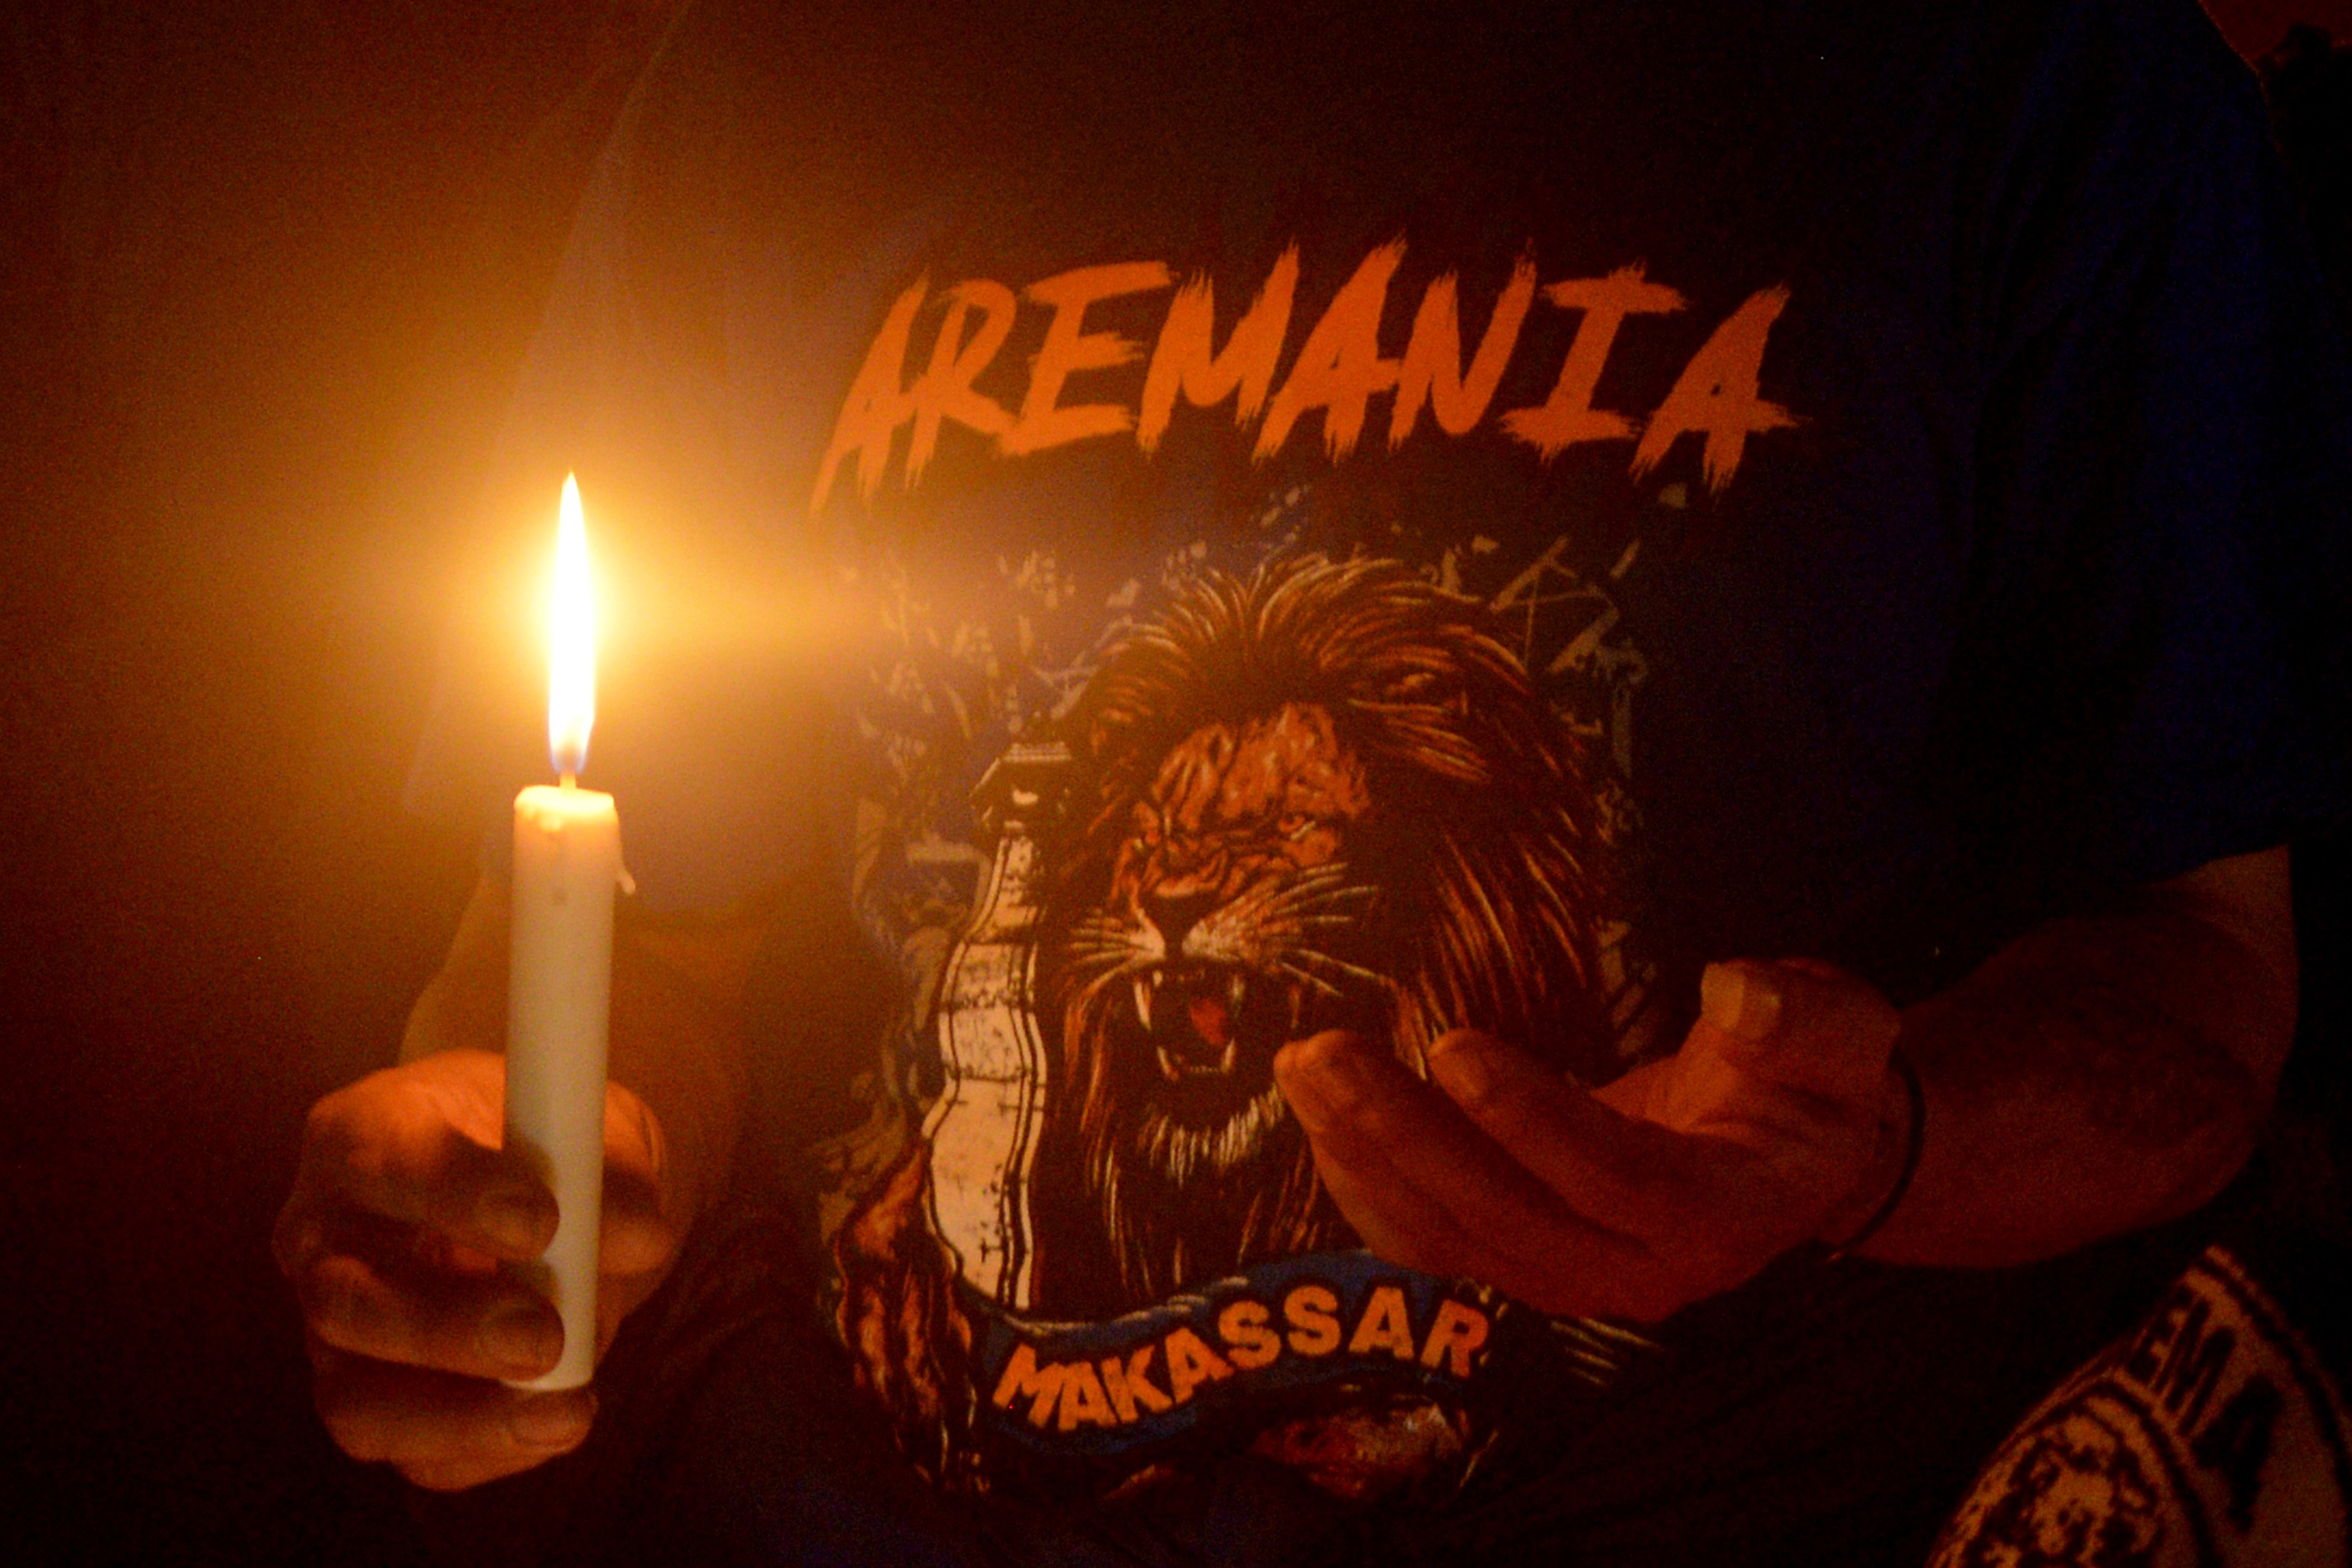 Seorang suporter Aremania berdoa saat melakukan aksi menyalakan lilin di depan Monumen Mandala, Makassar, Sulawesi Selatan, Minggu (2/10/2022) malam. Aksi tersebut sebagai bentuk solidaritas dan doa bersama untuk para suporter Arema yang menjadi korban kerusuhan di Stadion Kanjuruhan seusai pertandingan Liga I Arema FC melawan Persebaya. ANTARA FOTO/Abriawan Abhe/nym.